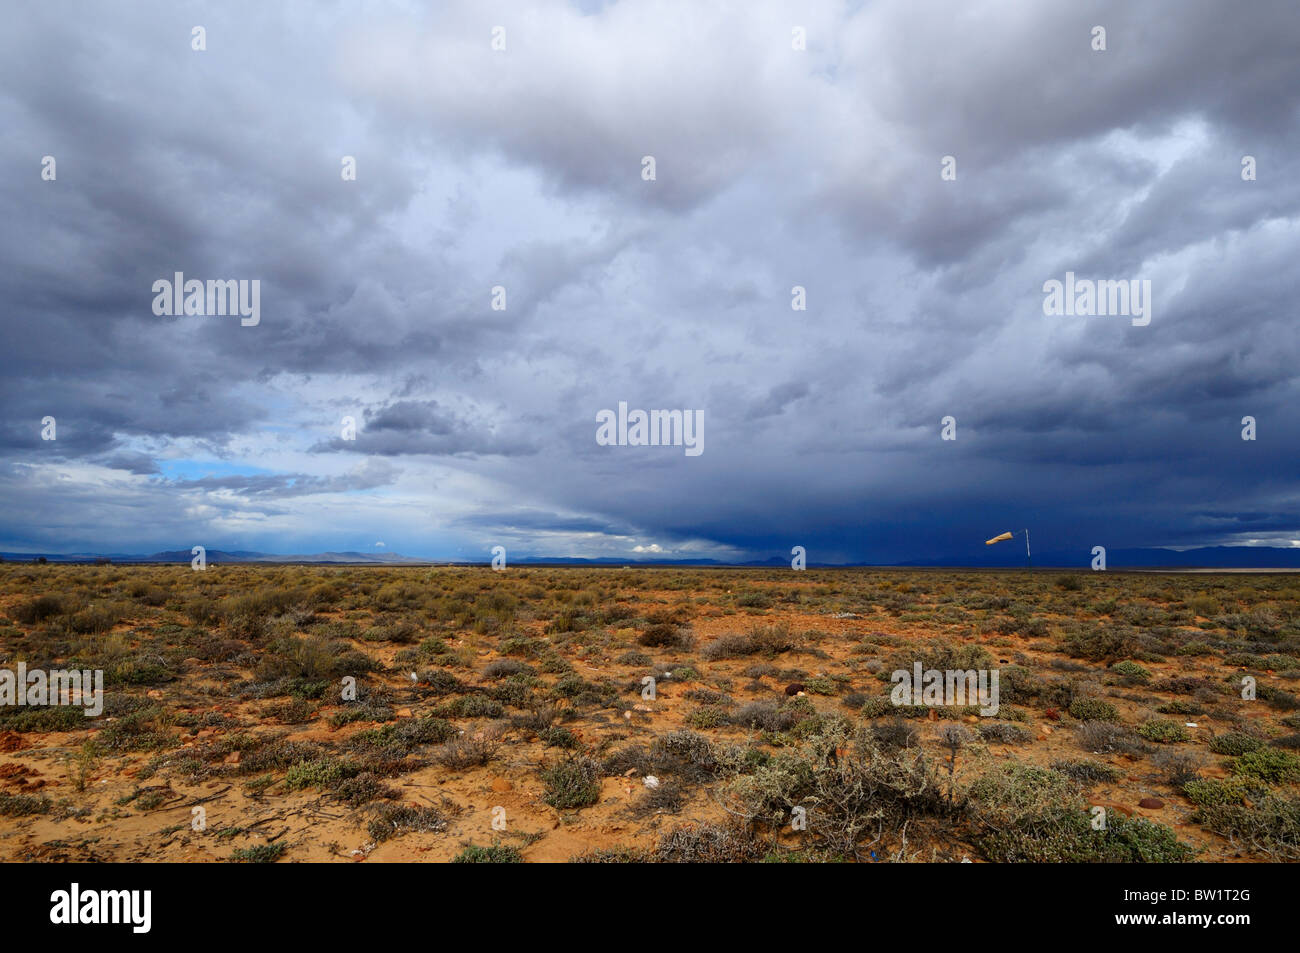 Aria di tempesta oltre il deserto. Karoo, Sud Africa. Foto Stock